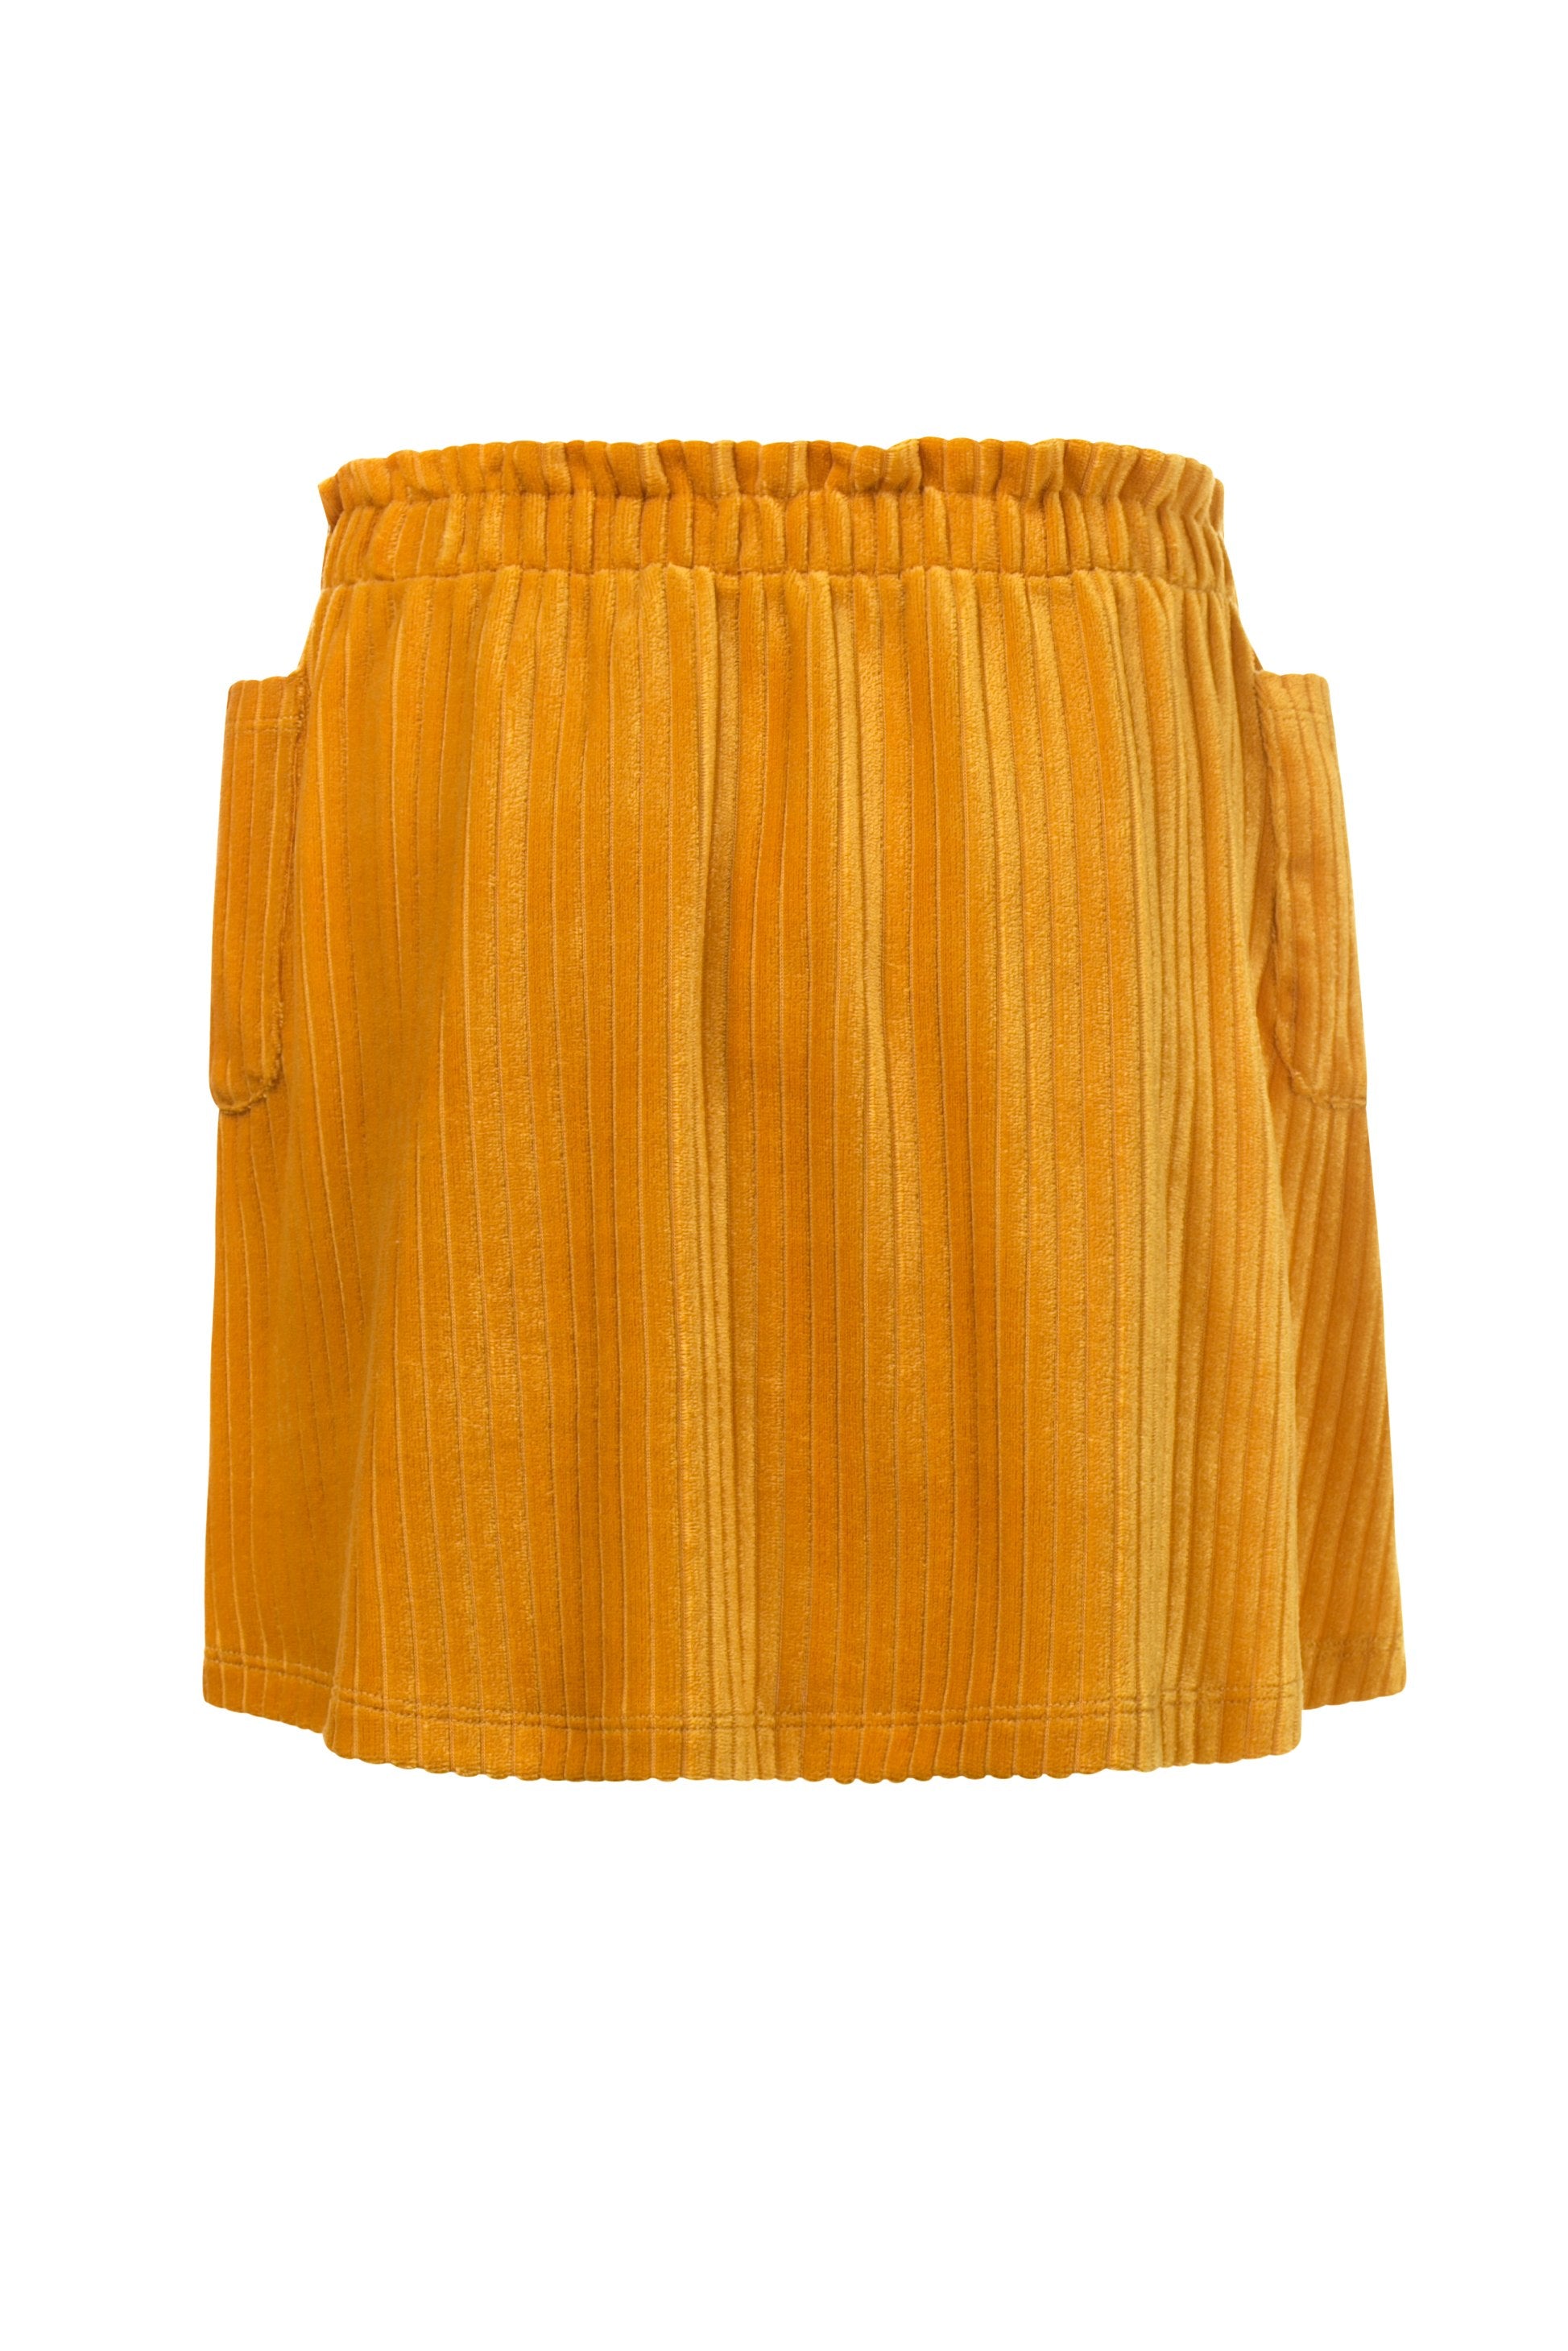 Meisjes Little velvet skirt van Looxs Little in de kleur Honey in maat 128.